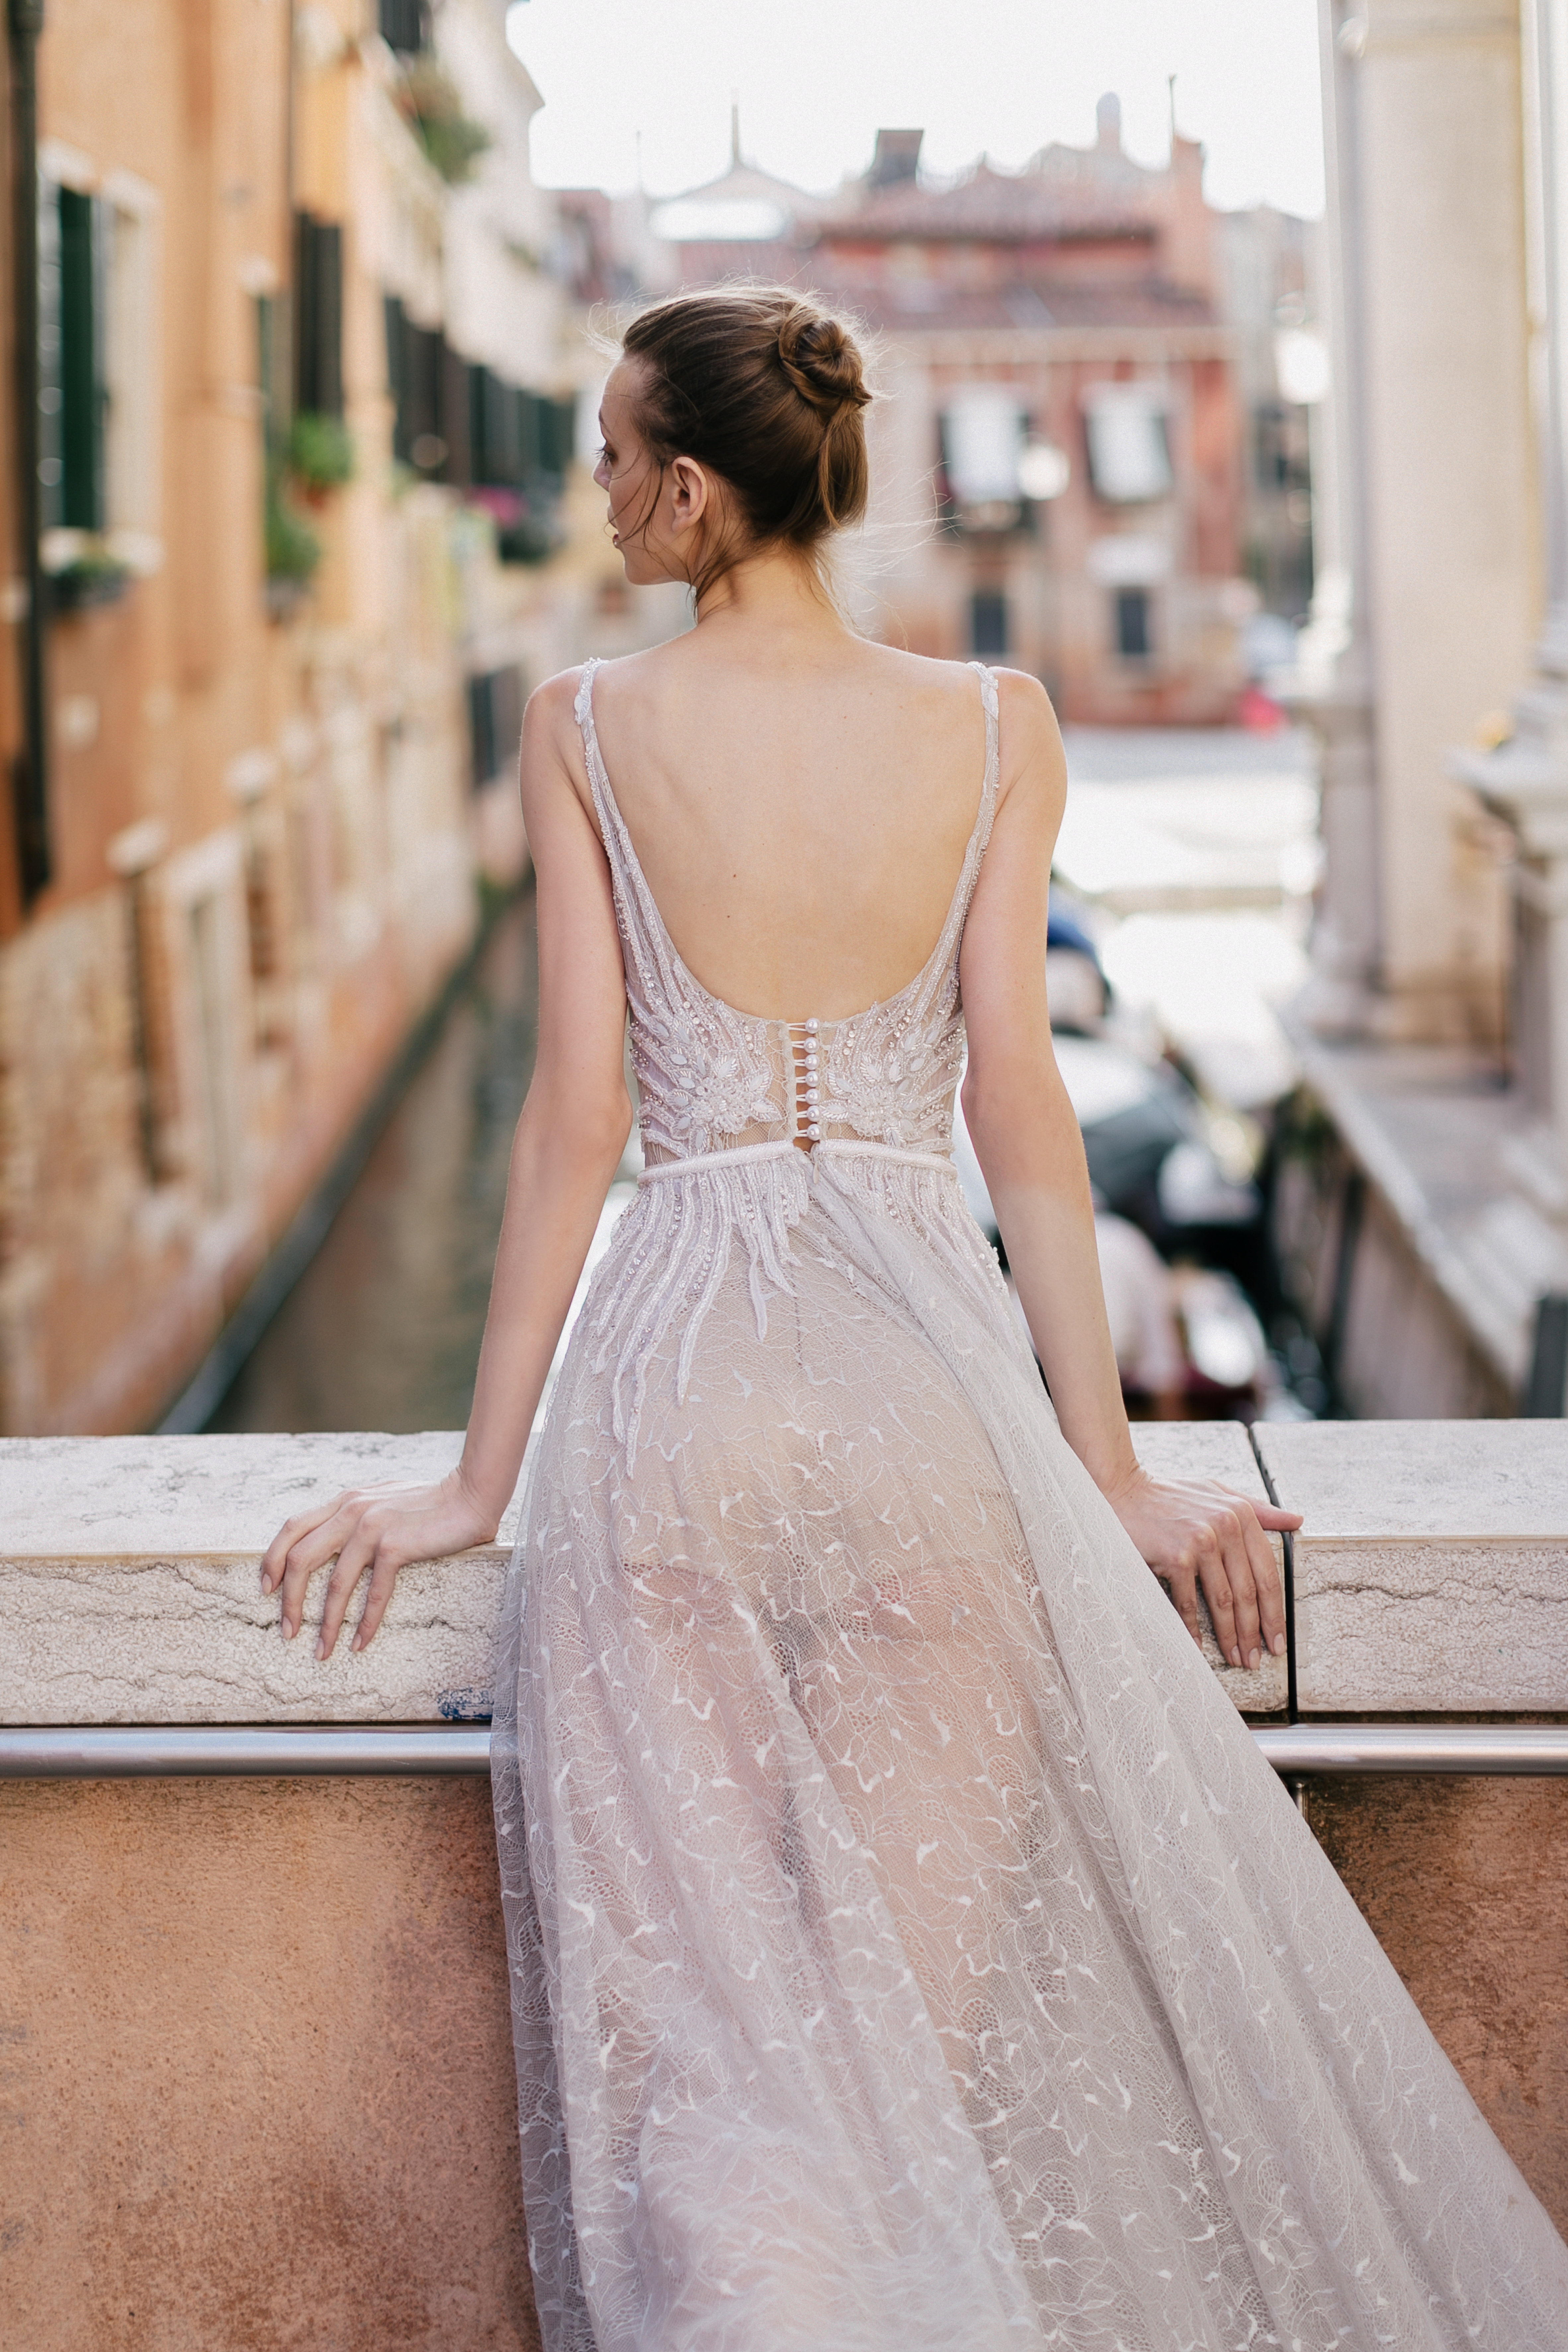 Купить свадебное платье «Линдиас» Рара Авис из коллекции Лакшери Коллекшен 2017 года в салоне свадебных платьев